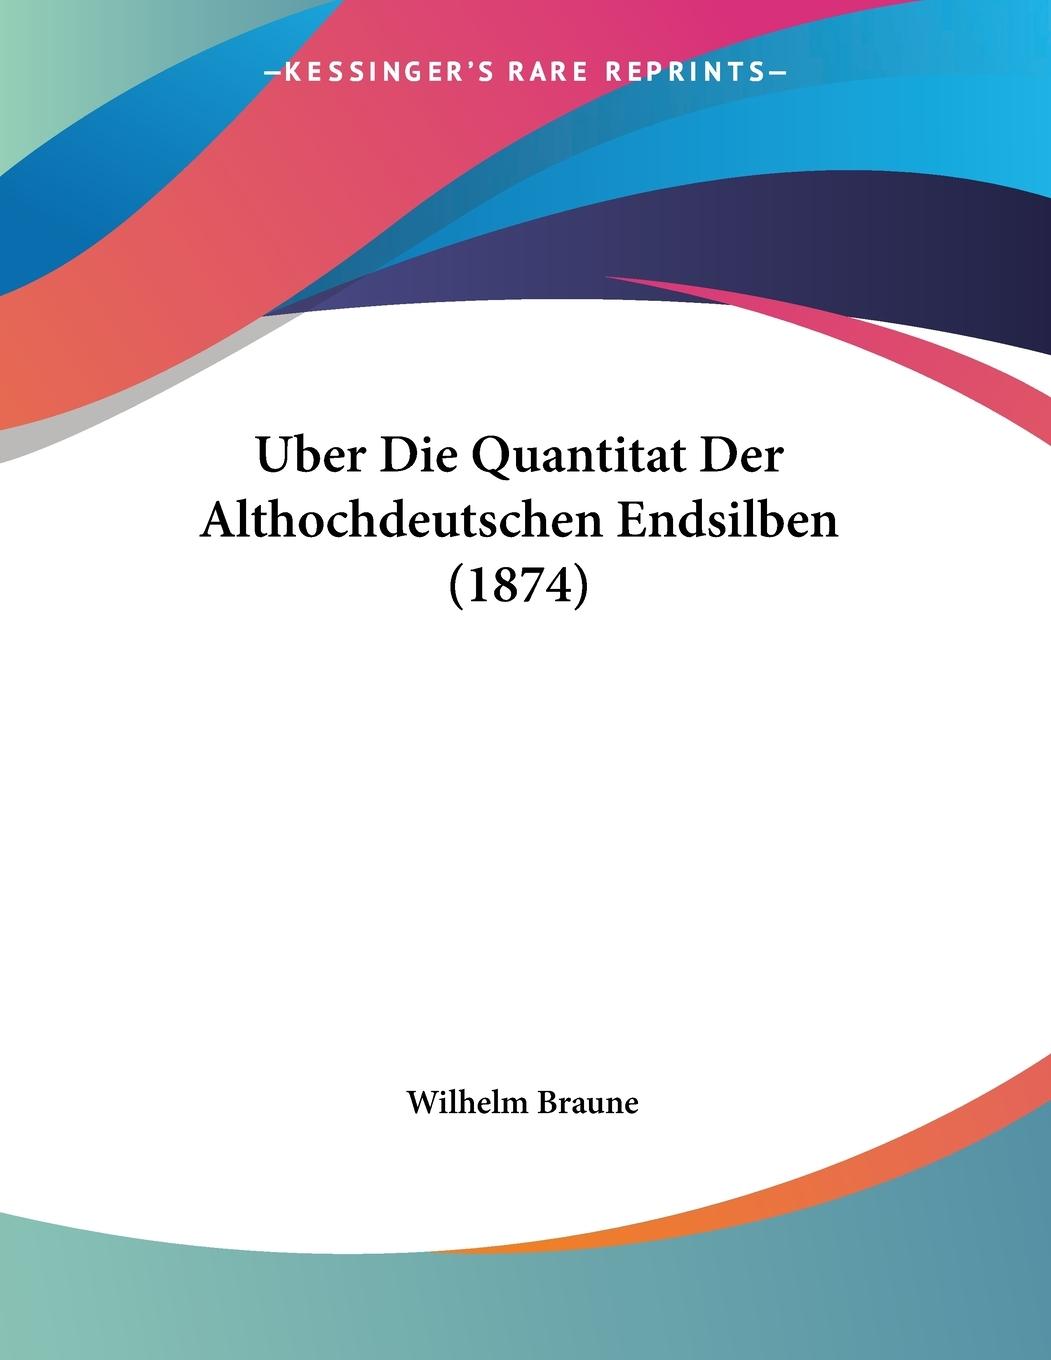 Uber Die Quantitat Der Althochdeutschen Endsilben (1874) - Braune, Wilhelm